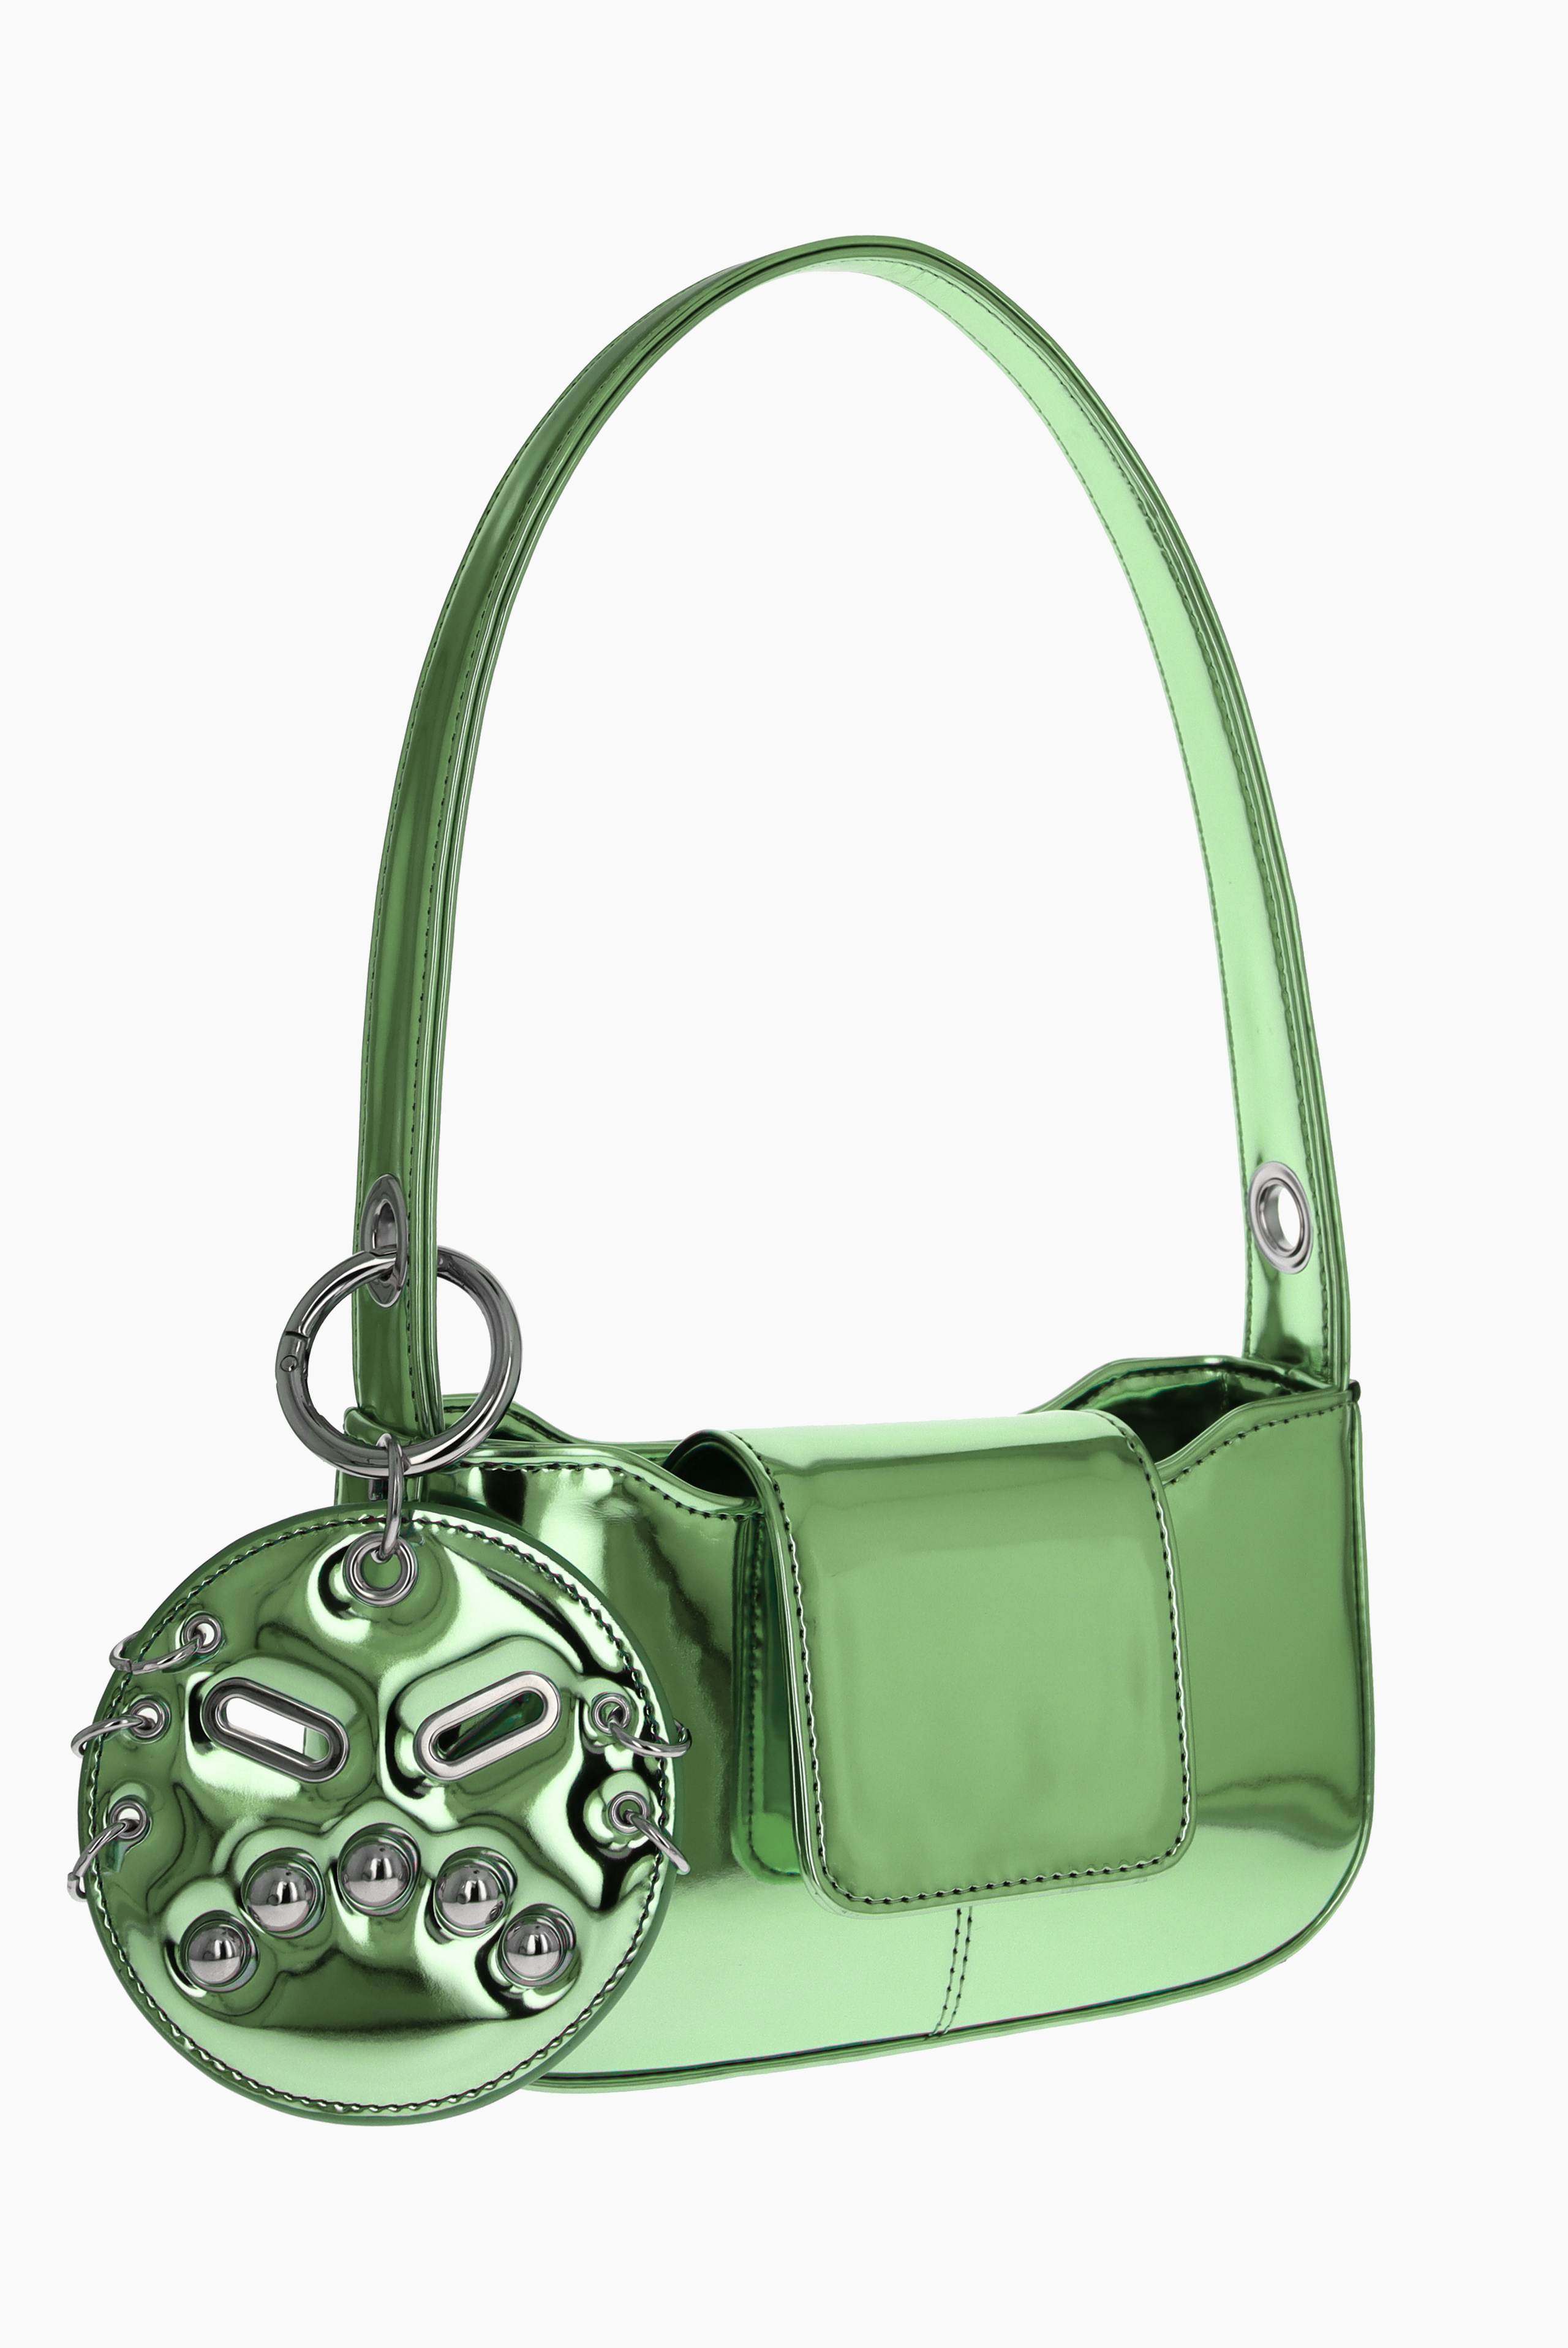 Dylan metallic green bag